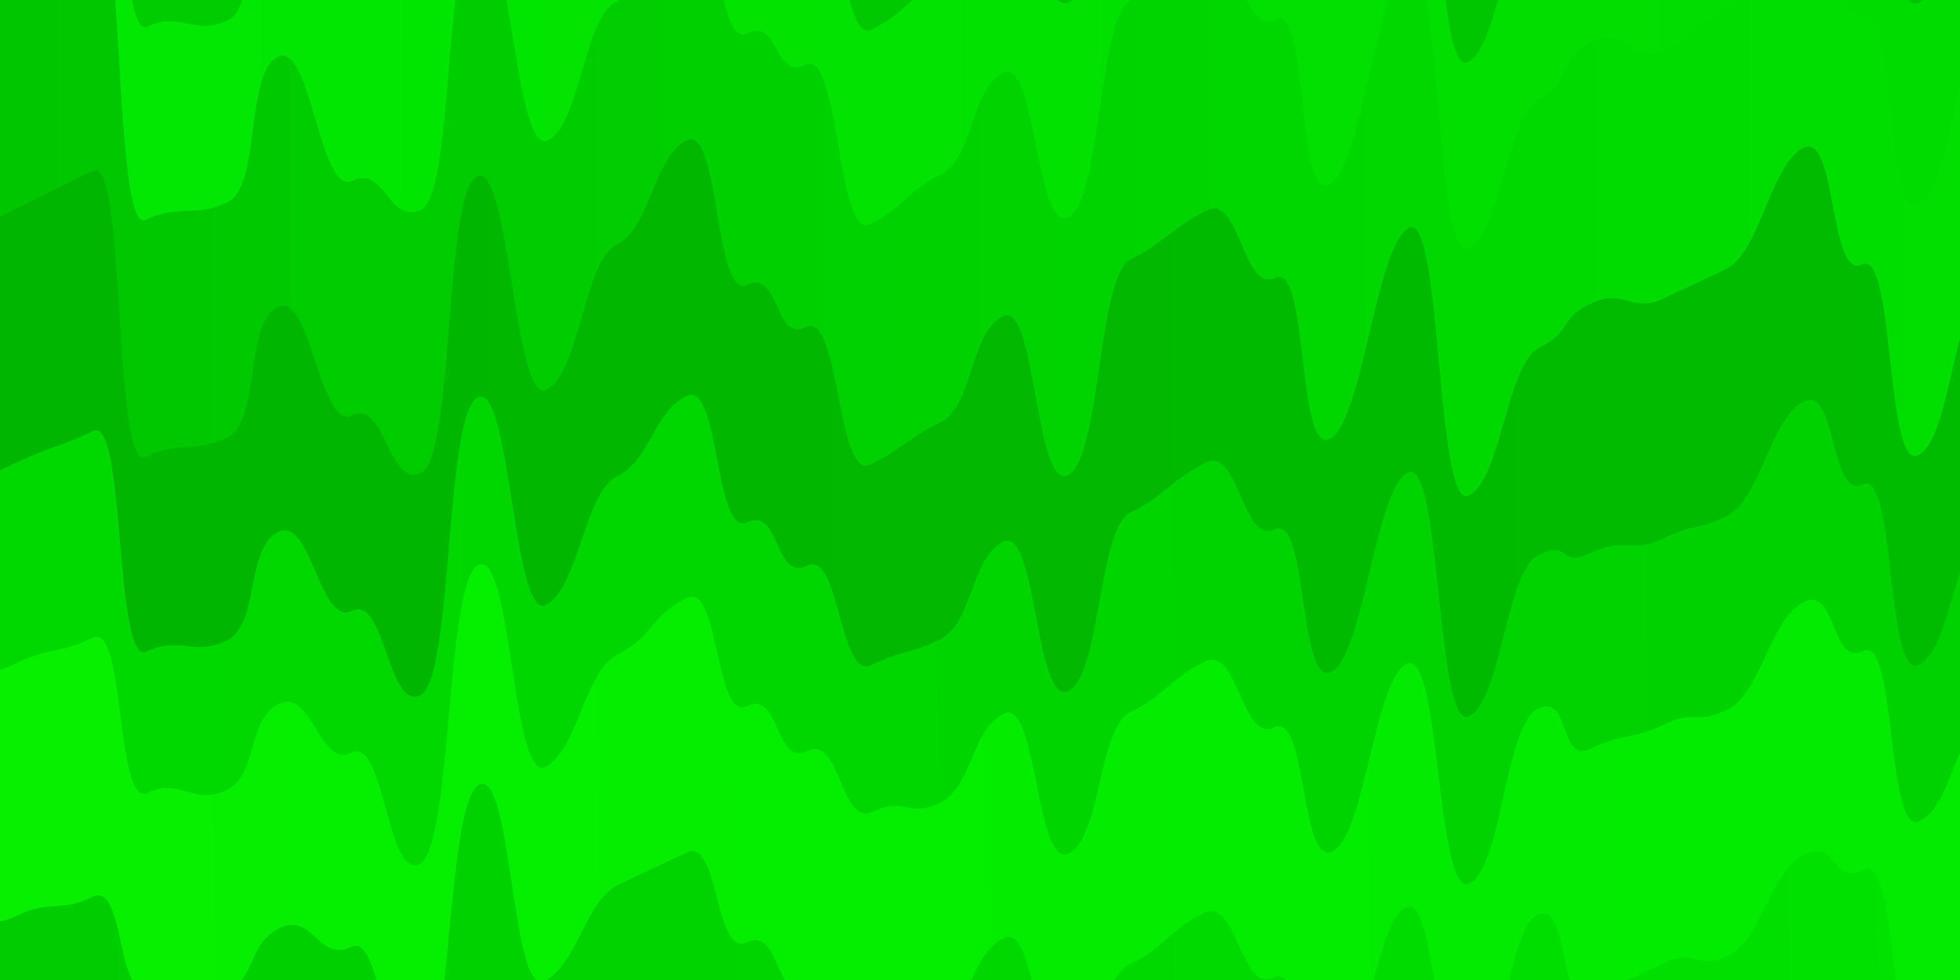 patrón de vector verde claro con curvas. Ilustración abstracta con arcos degradados. plantilla para su diseño de interfaz de usuario.